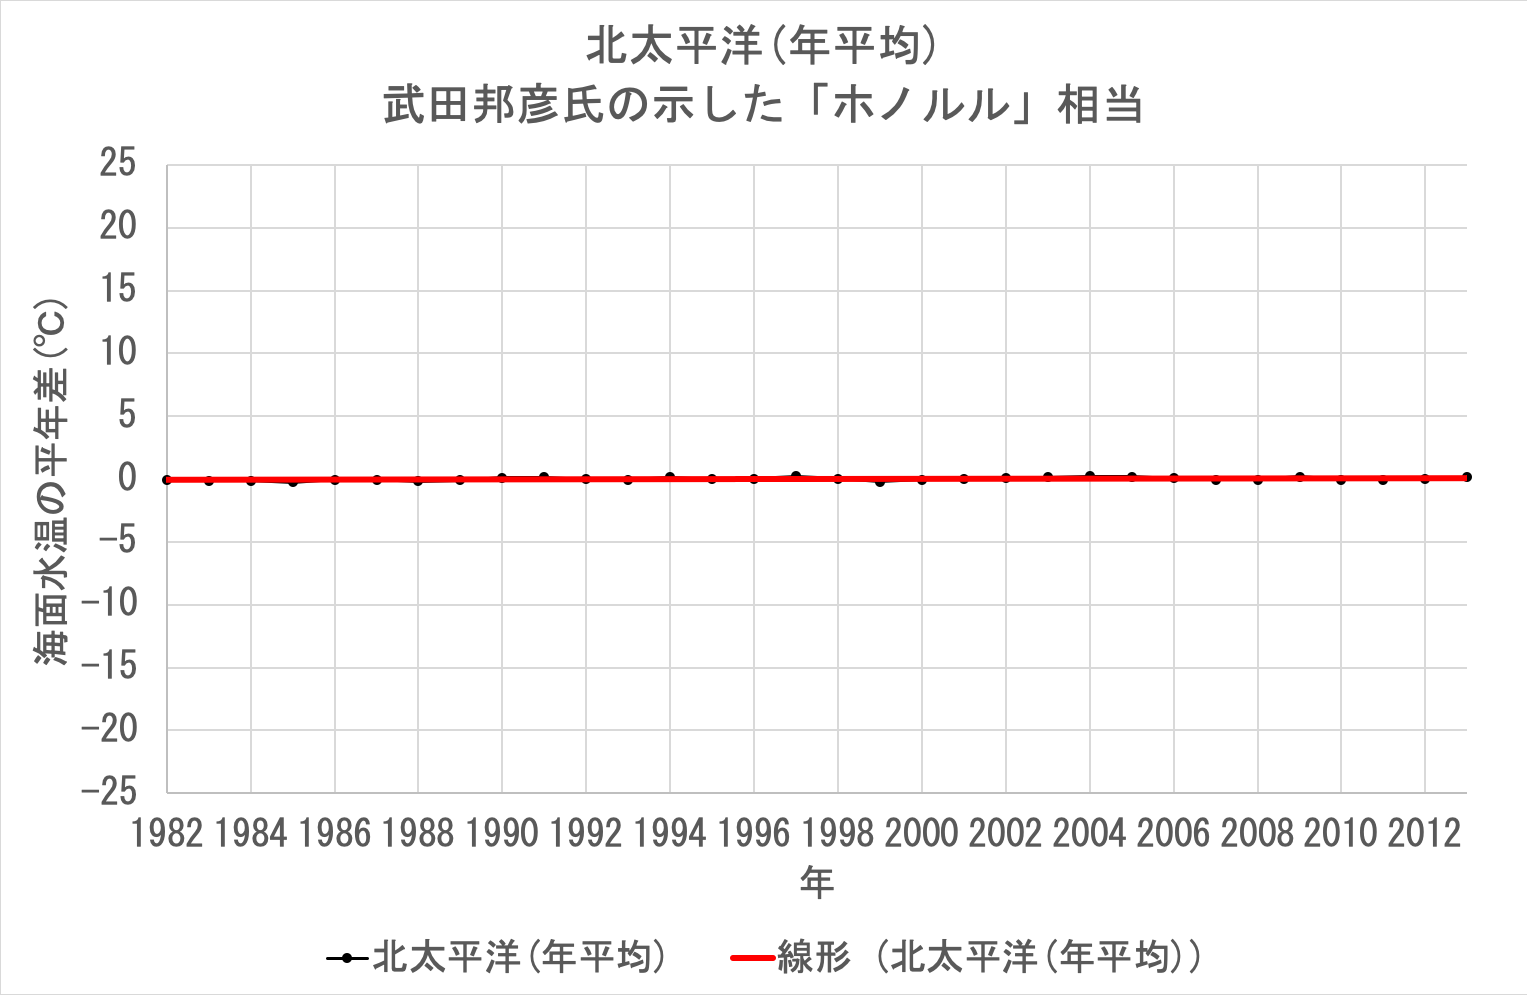 太平洋の年間平均水温(1981〜2013年)再描画２